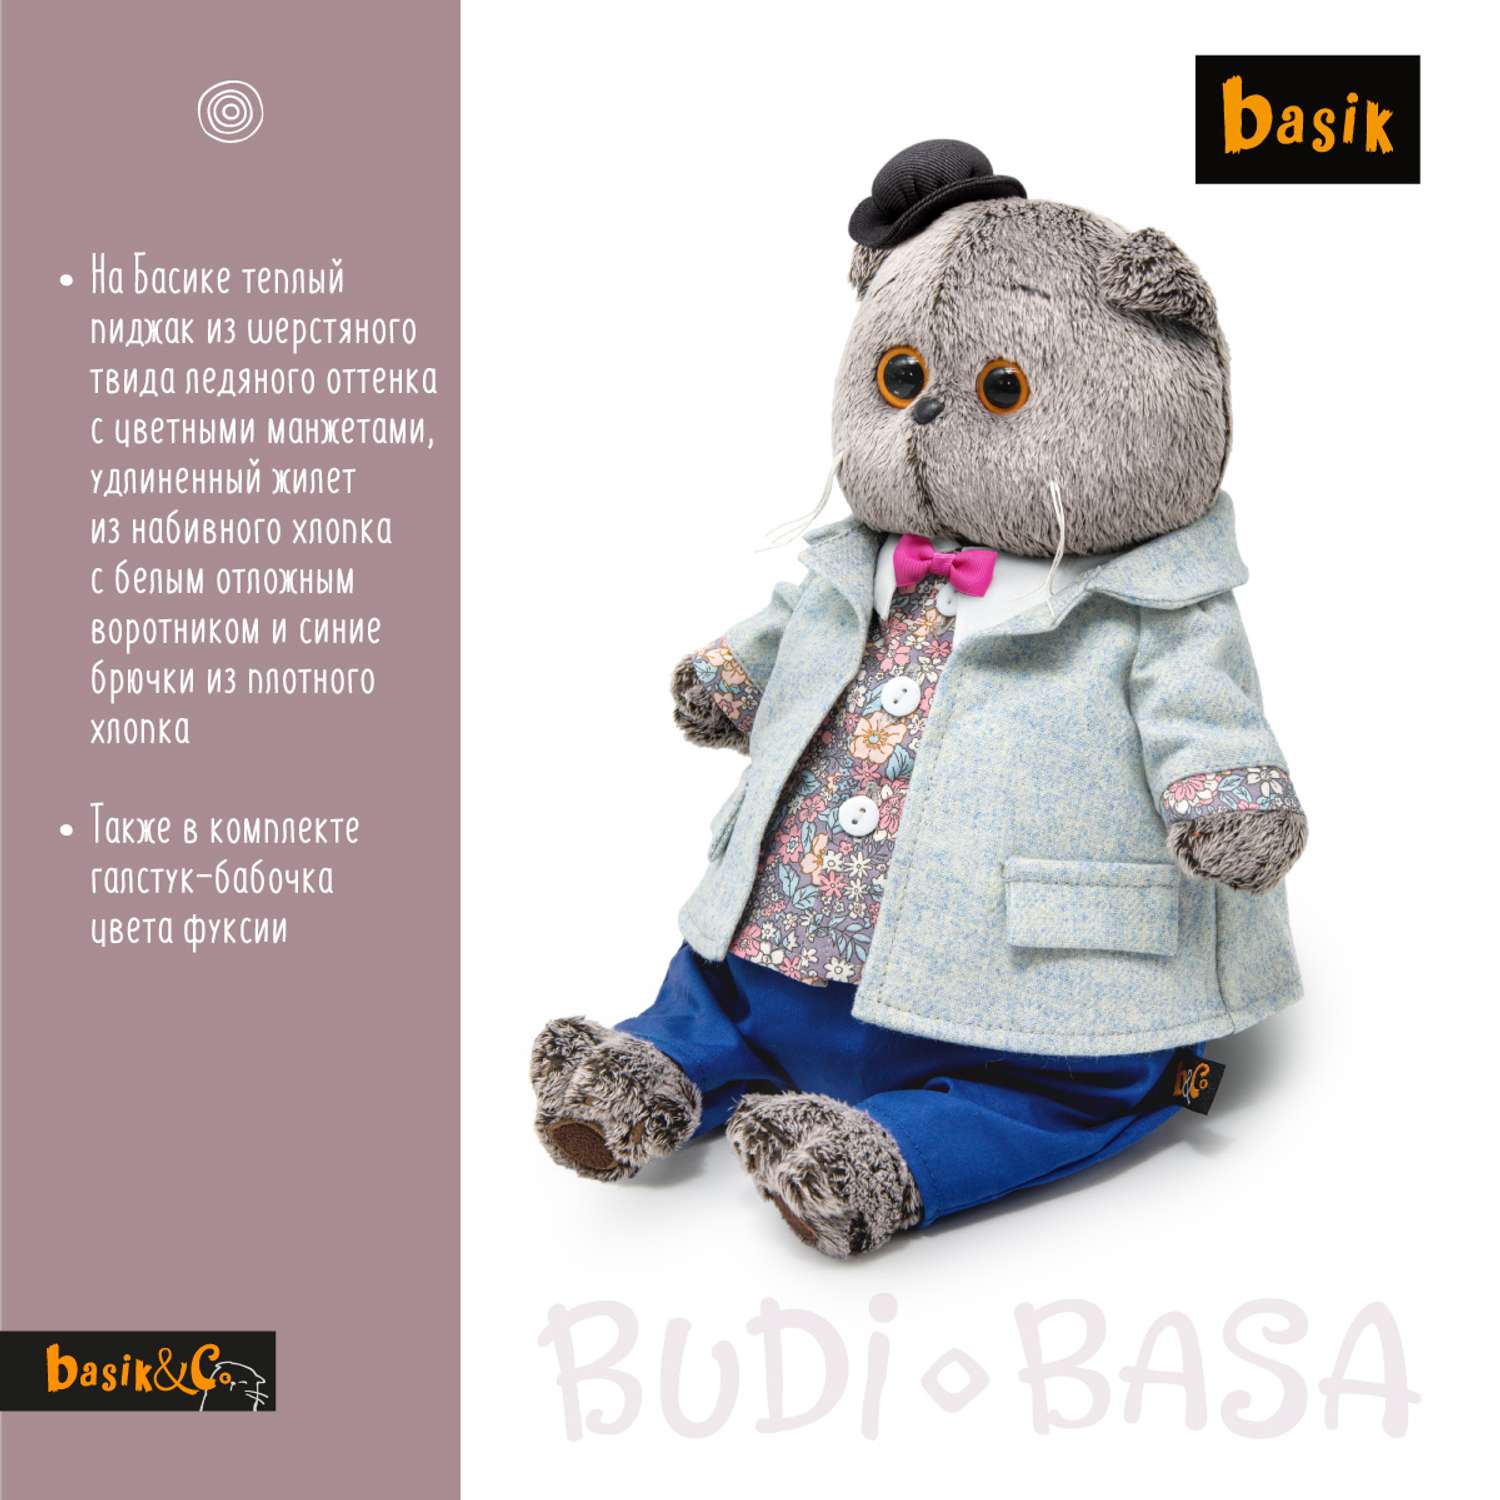 Мягкая игрушка BUDI BASA Басик в теплом пиджаке 19 см Ks19-242 - фото 3